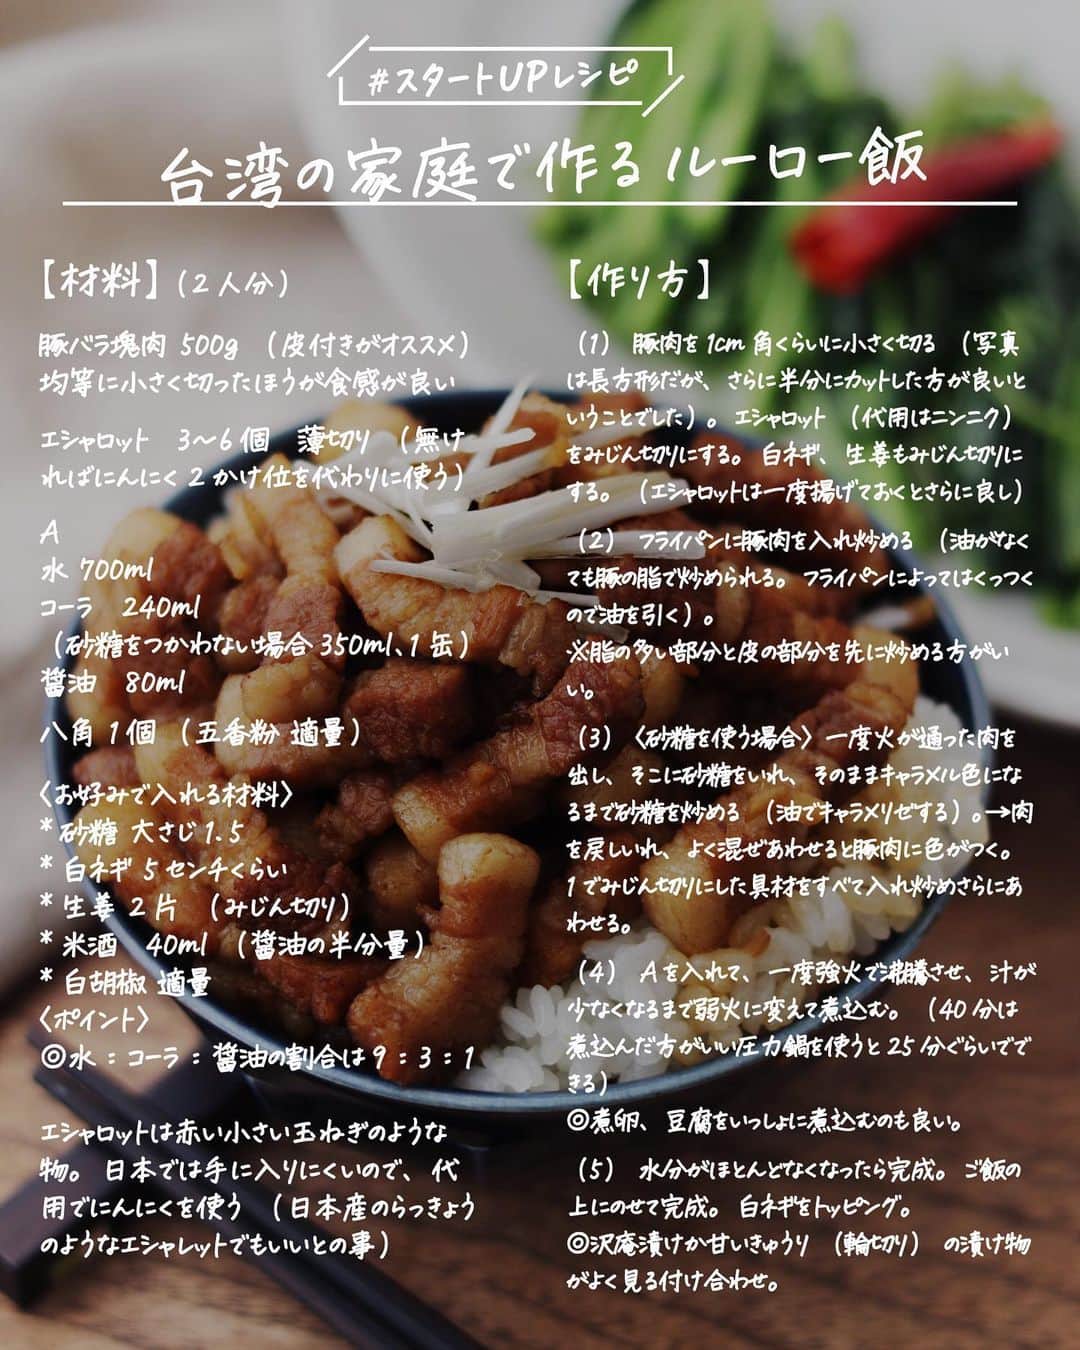 utoshさんのインスタグラム写真 - (utoshInstagram)「【レシピ画像付き】台湾の家庭で作るルーロー飯！﻿ ーーーーーーーー﻿ 台湾のイエちゃんから教わった、台湾で実際に食べられているルーロー飯！絶品です！﻿ ーーーーーー✂︎ー﻿ ﻿ こんにちは🙋🏻﻿ ﻿ 昨日のルーロー飯のインスタLIVE、見て下さった本当にありがとうございました😊  まだ見てない方、ぜひ見てみて下さい。絶対に勉強になる、素晴らしい回だったと思います✨ ﻿ 台湾のイエちゃんも快くLIVEに参加してくれたし、ちゃんと自分でも下調べをして挑んでくれたので、とても楽しくできました。 ﻿ 僕が聞きたかった事の一つに「滷肉飯」と「魯肉飯」どっちなのか、という長年の疑問があったんですが、それも分ったし、イエちゃんと話していて色々な事が勉強になりました👌🏻✨﻿ ﻿ それと、今回のレシピの最大のポイントは甘みの部分。砂糖とコーラですね。﻿ 「台湾ではコーラで作ります」という話を聞いてから、ずっとなんでコーラ？と思っていたんですが、冰糖という台湾の氷砂糖を使うのは大変で、家庭や屋台などではコーラを使う事が多いとの事。コクが出るんだとか。﻿ 白砂糖を使うのならコーラでいいと思うけど、白砂糖を使いたくないという方は砂糖を使った作り方も習ったので、コーラを使わずつくりたい方は砂糖を油でキャラメリゼして作ってみてください✨﻿ ﻿ ー✂︎ー﻿ ﻿ さすがに料理のポイントが沢山あって伝えきれない部分が多いので、ぜひIGTVに保存してあるルーロー飯の作り方を見てみて下さい。﻿ 目から鱗の事が沢山あると思います。﻿ ﻿ ﻿ ー・ー・ー・ー・ー・ー・ー・ー﻿ ﻿ 9月11日に3冊目となる著書「在宅楽飯100」が発売されました📙﻿ 簡単に作れて栄養満天、これからの暮らしにぴったりの本になっております。﻿ 僕のプロフィールのハイライトからAmazonページに行く事ができますので﻿ ぜひご購入ください！﻿ ▶︎ @utosh﻿ ﻿ ー・ー・ー・ー・ー・ー・ー・ー﻿ ﻿ ﻿ レシピはこちら↓﻿ ＿＿＿＿＿﻿ ﻿ 台湾の家庭で作るルーロー飯〈滷肉飯〉（2人分）﻿ ﻿ 【材料】﻿ 豚バラ塊肉 500g（皮付きがオススメ）均等に小さく切ったほうが食感が良い﻿ ﻿ エシャロット　3〜6個　薄切り（無ければにんにく2かけ位を代わりに使う）﻿ ﻿ A﻿ 水 700ml﻿ コーラ　240ml（砂糖をつかわない場合350ml、1缶使う）﻿ 醤油　80ml﻿ ﻿ 八角 1個 （五香粉 適量）﻿ ﻿ 〈お好みで入れる材料〉﻿ *砂糖 大さじ1.5﻿ *白ネギ 5センチくらい﻿ *生姜 2片（みじん切り）﻿ *米酒　40ml（醤油の半分量）﻿ *白胡椒 適量﻿ ﻿ ﻿ 〈ポイント〉﻿ ◎水：コーラ：醤油の割合は9：3：1、量を変更する時はこの割合を守る。﻿ →台湾では一般的に“冰糖”を使って一緒に煮込むので甘味は出る。地域によって味も若干違っていて、北から南に行くと、仕上げもだんだん甘めになる。﻿ ﻿ エシャロットは赤い小さい玉ねぎのような物。日本では手に入りにくいので、代用でにんにくを使う（日本産のらっきょうのようなエシャレットでもいいとの事）台湾ではエシャロットを油で一度揚げて（油通し）使う。﻿ ﻿ ﻿ ﻿ 【作り方】﻿ （1）豚肉を1cm角くらいに小さく切る（写真は長方形だが、さらに半分にカットした方が良いということでした）。エシャロット（代用はニンニク）をみじん切りにする。白ネギ、生姜もみじん切りにする。（エシャロットは一度揚げておくとさらに良し）﻿ ﻿ （2）フライパンに豚肉を入れ炒める（油がなくても豚の脂で炒められる。フライパンによってはくっつくので油を引く）。﻿ ※脂の多い部分と皮の部分を先に炒める方がいい。﻿ ﻿ （3）〈砂糖を使う場合〉一度火が通った肉を出し、そこに砂糖をいれ、そのままキャラメル色になるまで砂糖を炒める（油でキャラメリゼする）。→肉を戻しいれ、よく混ぜあわせると豚肉に色がつく。1でみじん切りにした具材をすべて入れ炒めさらにあわせる。﻿ ﻿ （4）Aを入れて、一度強火で沸騰させ、汁が少なくなるまで弱火に変えて煮込む。（40分は煮込んだ方がいい圧力鍋を使うと25分ぐらいでできる）﻿ ◎煮卵、豆腐をいっしょに煮込むのも良い。﻿ ﻿ ﻿ （5）水分がほとんどなくなったら完成。ご飯の上にのせて完成。白ネギをトッピング。﻿ ◎沢庵漬けか甘いきゅうり（輪切り）の漬け物がよく見る付け合わせ。﻿ ﻿ ＿＿＿＿＿﻿ ﻿ ぜひ作ってくださいね！﻿ No local No food おいしく楽しく！﻿ ﻿ ﻿ #ルーローハン #ルーロー飯 #滷肉飯 #魯肉飯 #台湾料理 #台湾飯 #taiwan﻿ #スタートUPレシピ #スタートアップレシピ #ややはつレシピ #とりあえず野菜食 #やさしい飯 #在宅楽飯﻿ ﻿ #おうちごはん #レシピ #時短料理 #簡単レシピ #献立 #お家ご飯 #手料理 #今日のごはん #フーディーテーブル #japanesefoods」10月17日 17時18分 - utosh